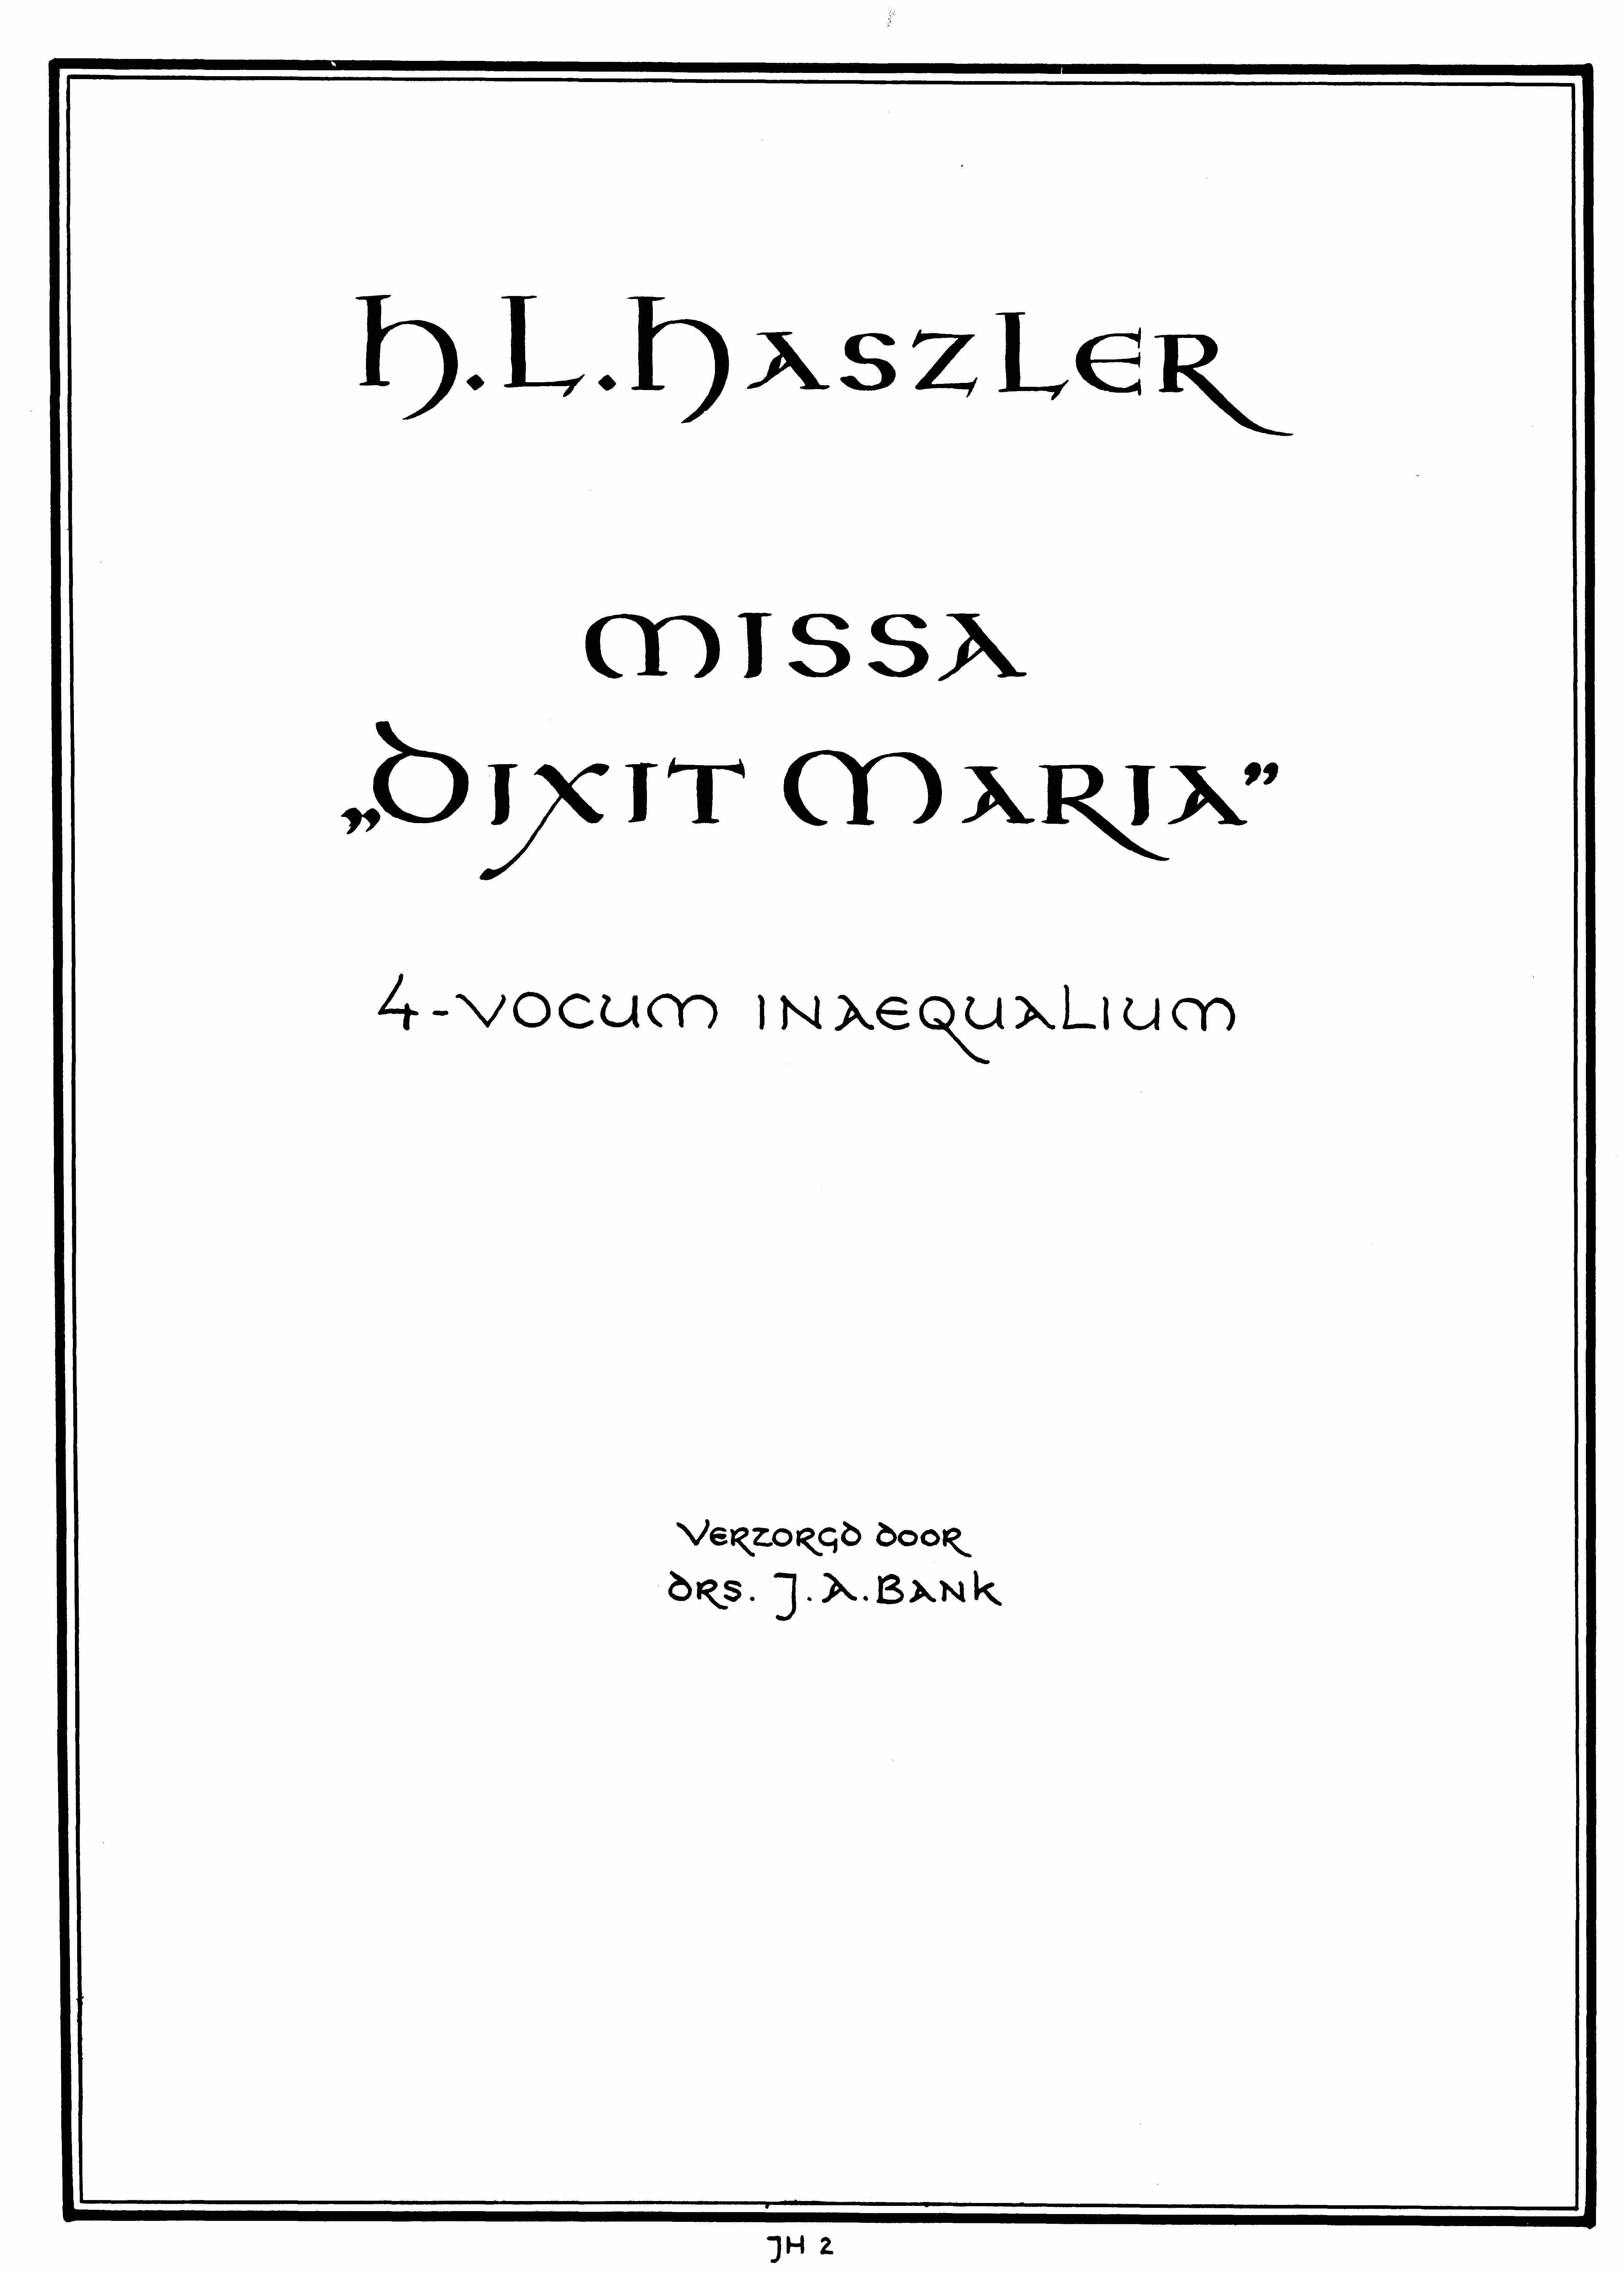 Hans Leo Hassler: Missa Super Dixit Maria (STTB)